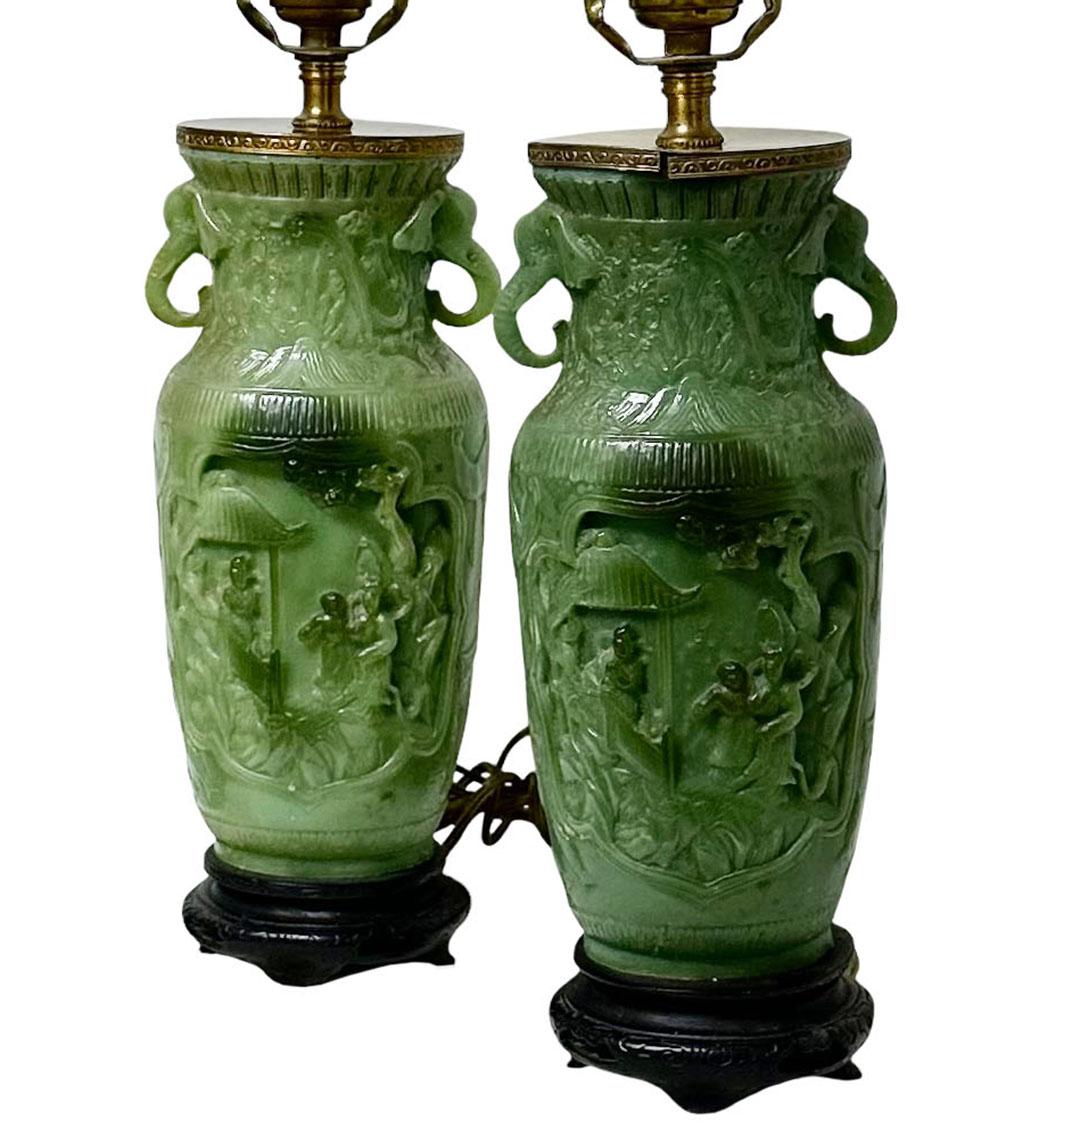 Die beiden grünen Lampen sind nicht aus Jade, sondern sollen wie Jade aussehen und entsprechen dem chinesischen Geschmack. Sie sind eine schöne Komposition mit Elefanten an den Seiten und einer Gerichtsszene in der Mitte. Sie sind amerikanisch aus